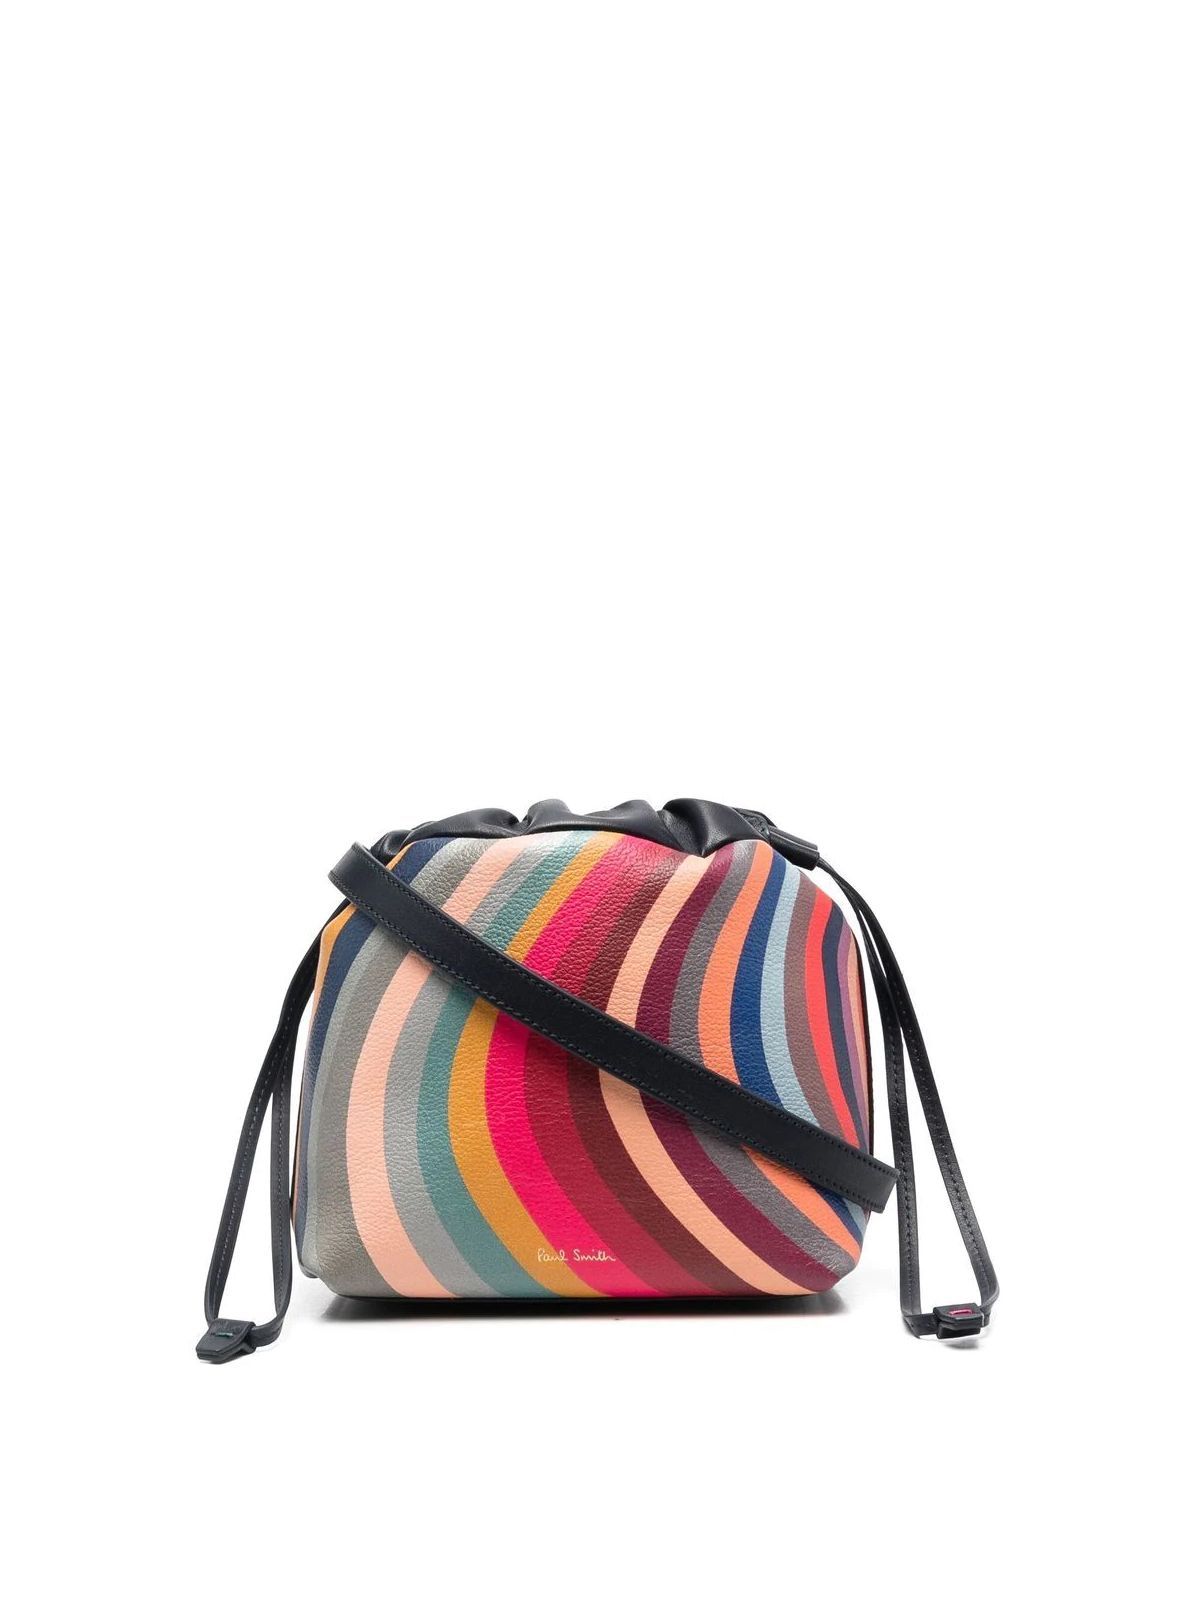 Paul Smith Multicolour Bucket Bag